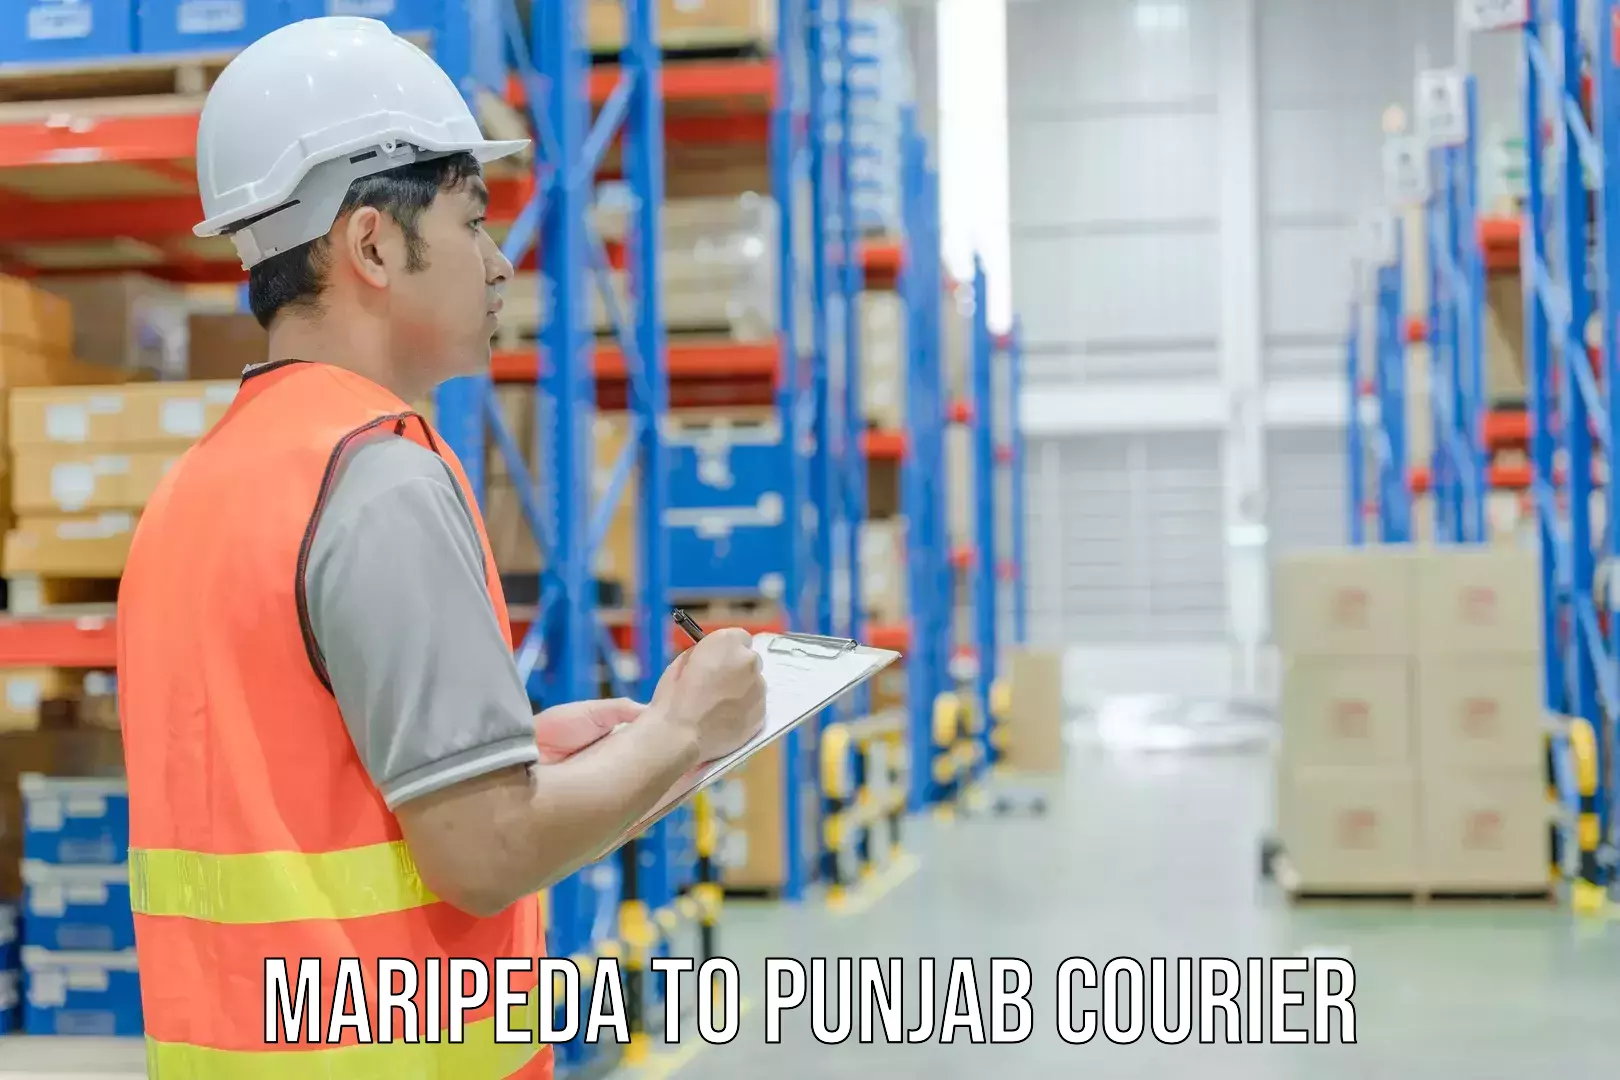 Courier service comparison Maripeda to Patran